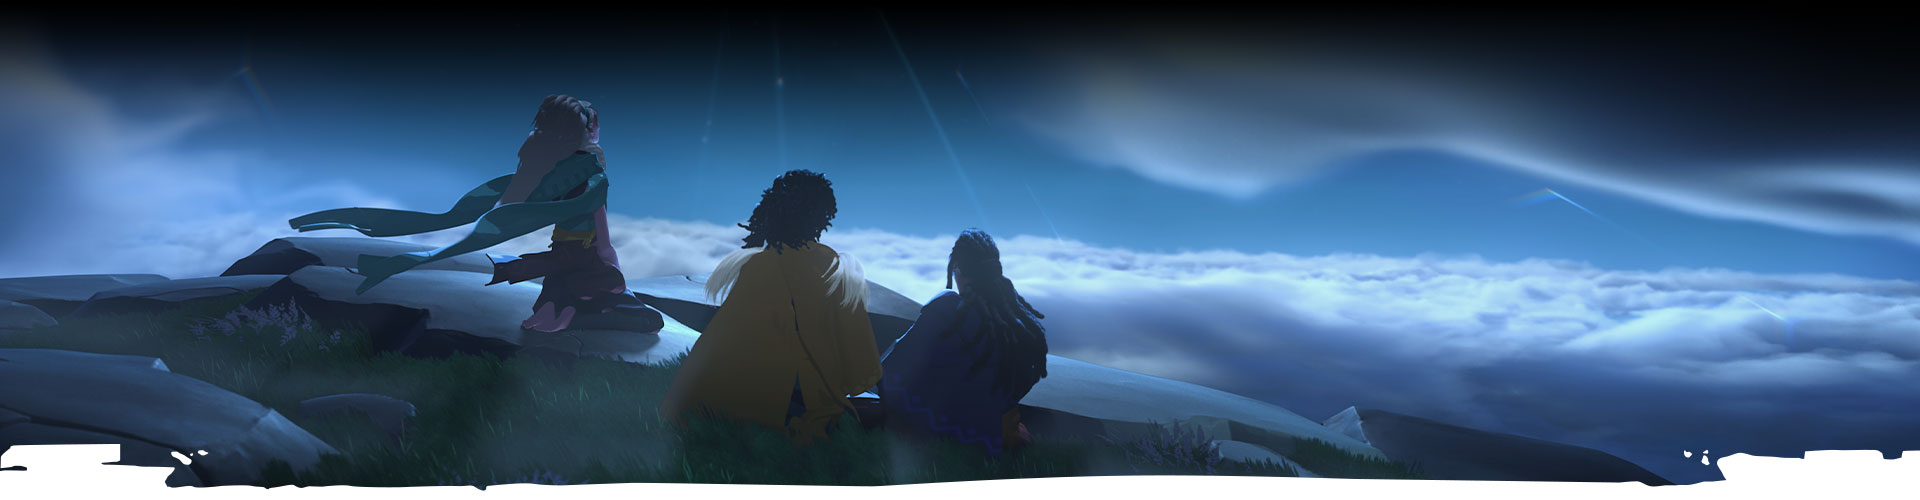 Három karakter néz fel az éjszakai égboltra. 